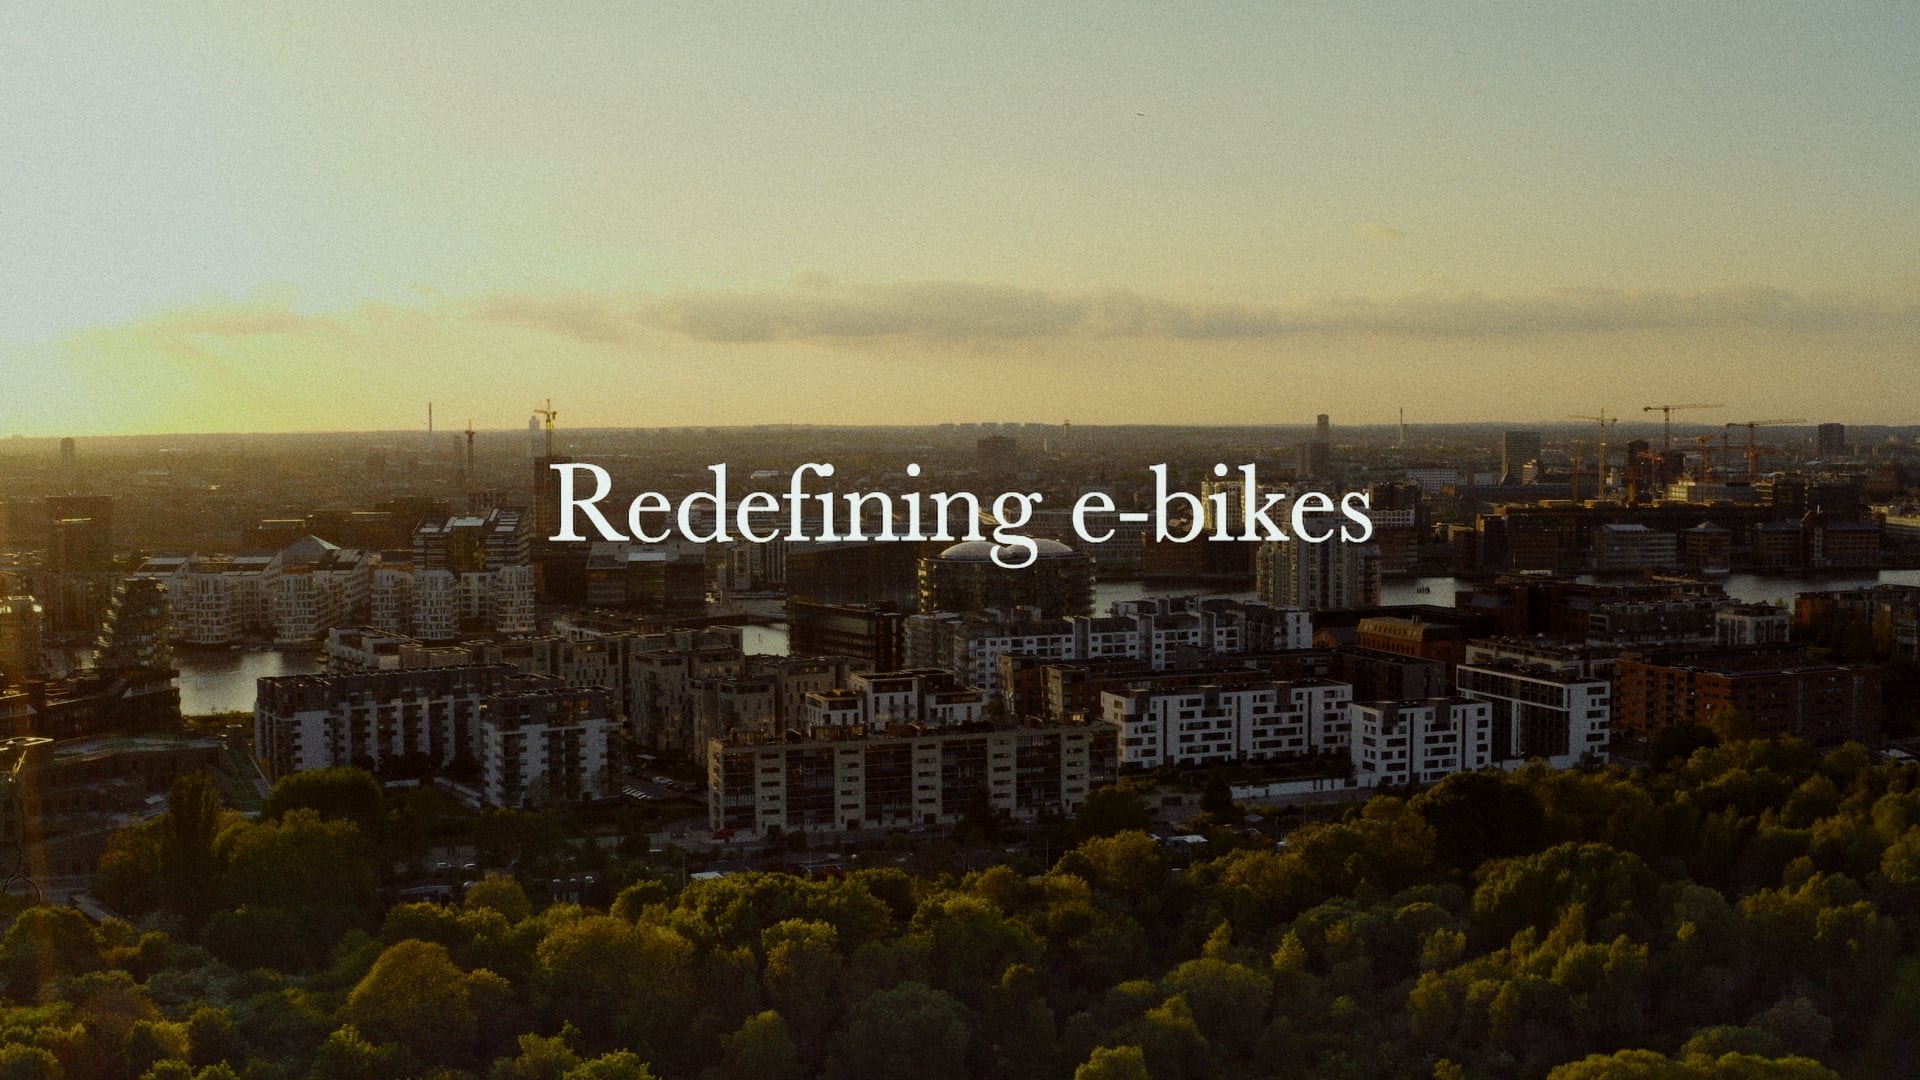 Himlen depositum jomfru Jan Herskind Cykler on Vimeo